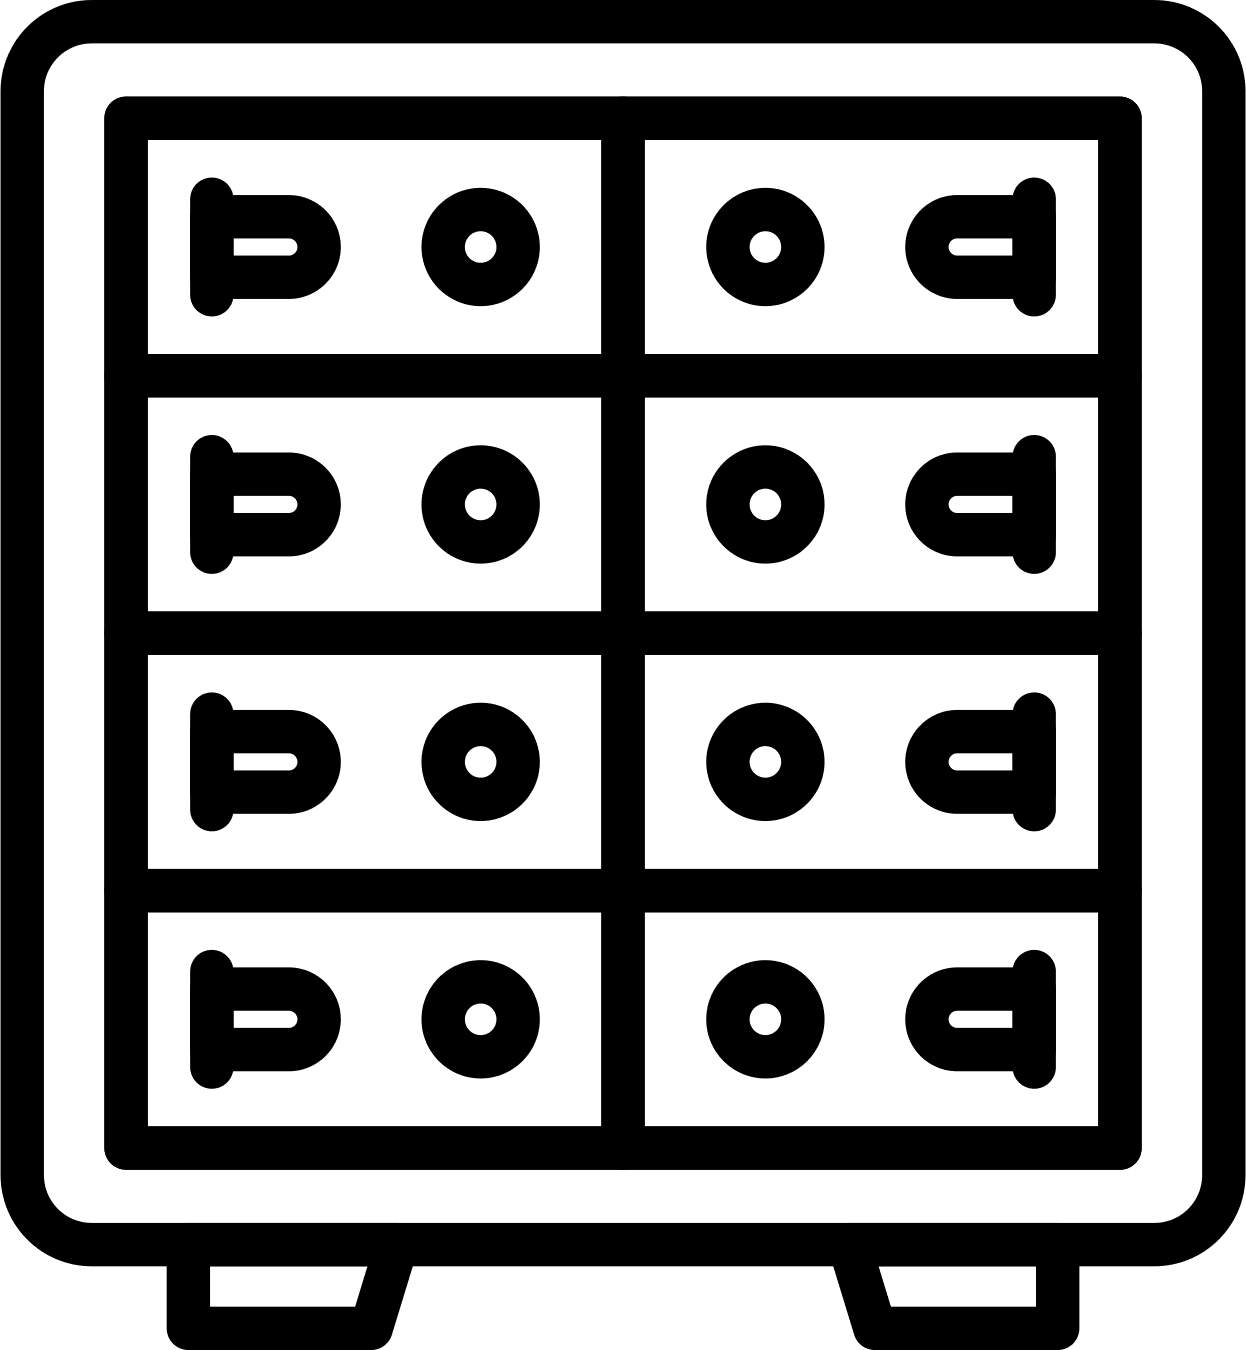 Grafische Darstellung eines Tresors mit Schliessfächern